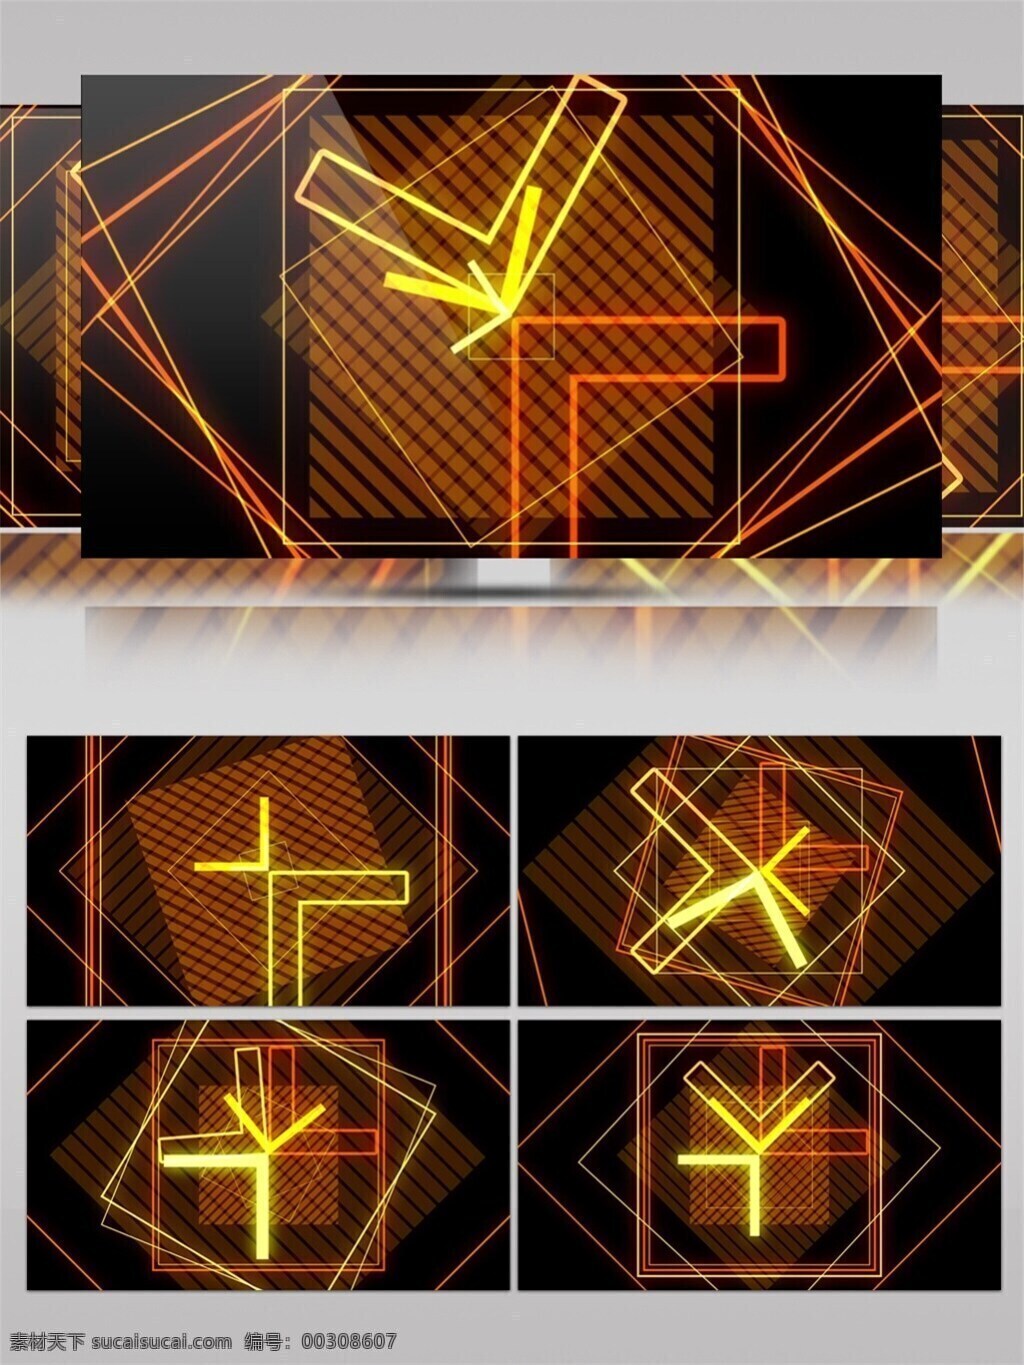 黄光 背景 高清 视频 vj灯光 壁纸图案 变换图形 动态展示 立体几何 特效 炫酷背景 装饰风格